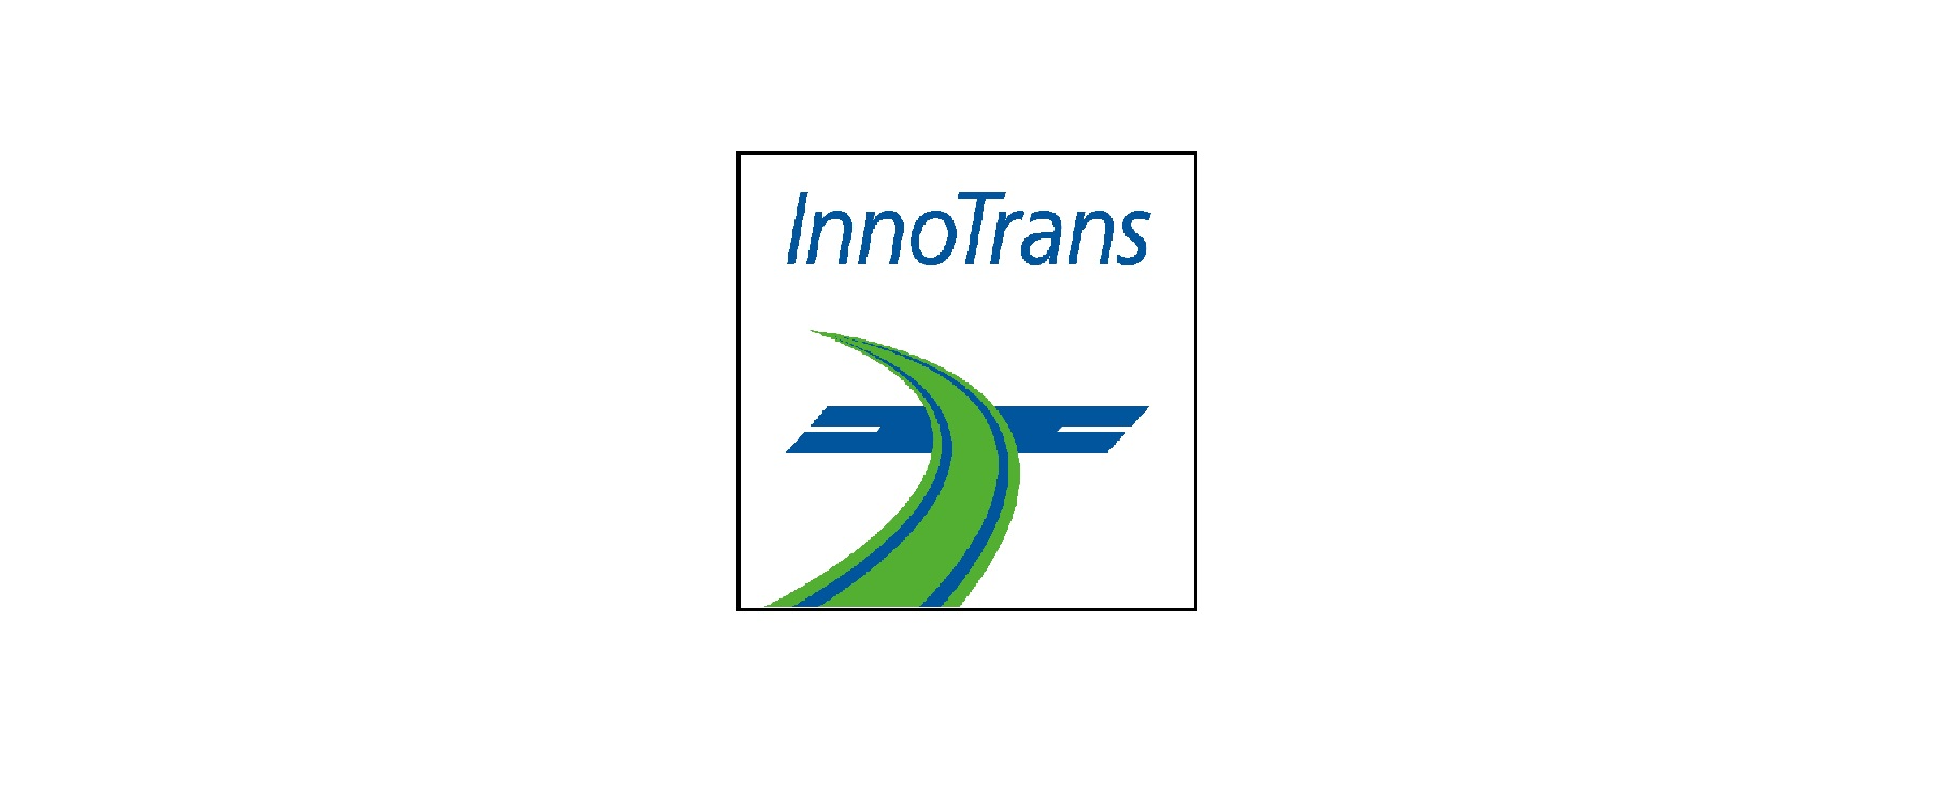 InnoTrans logo